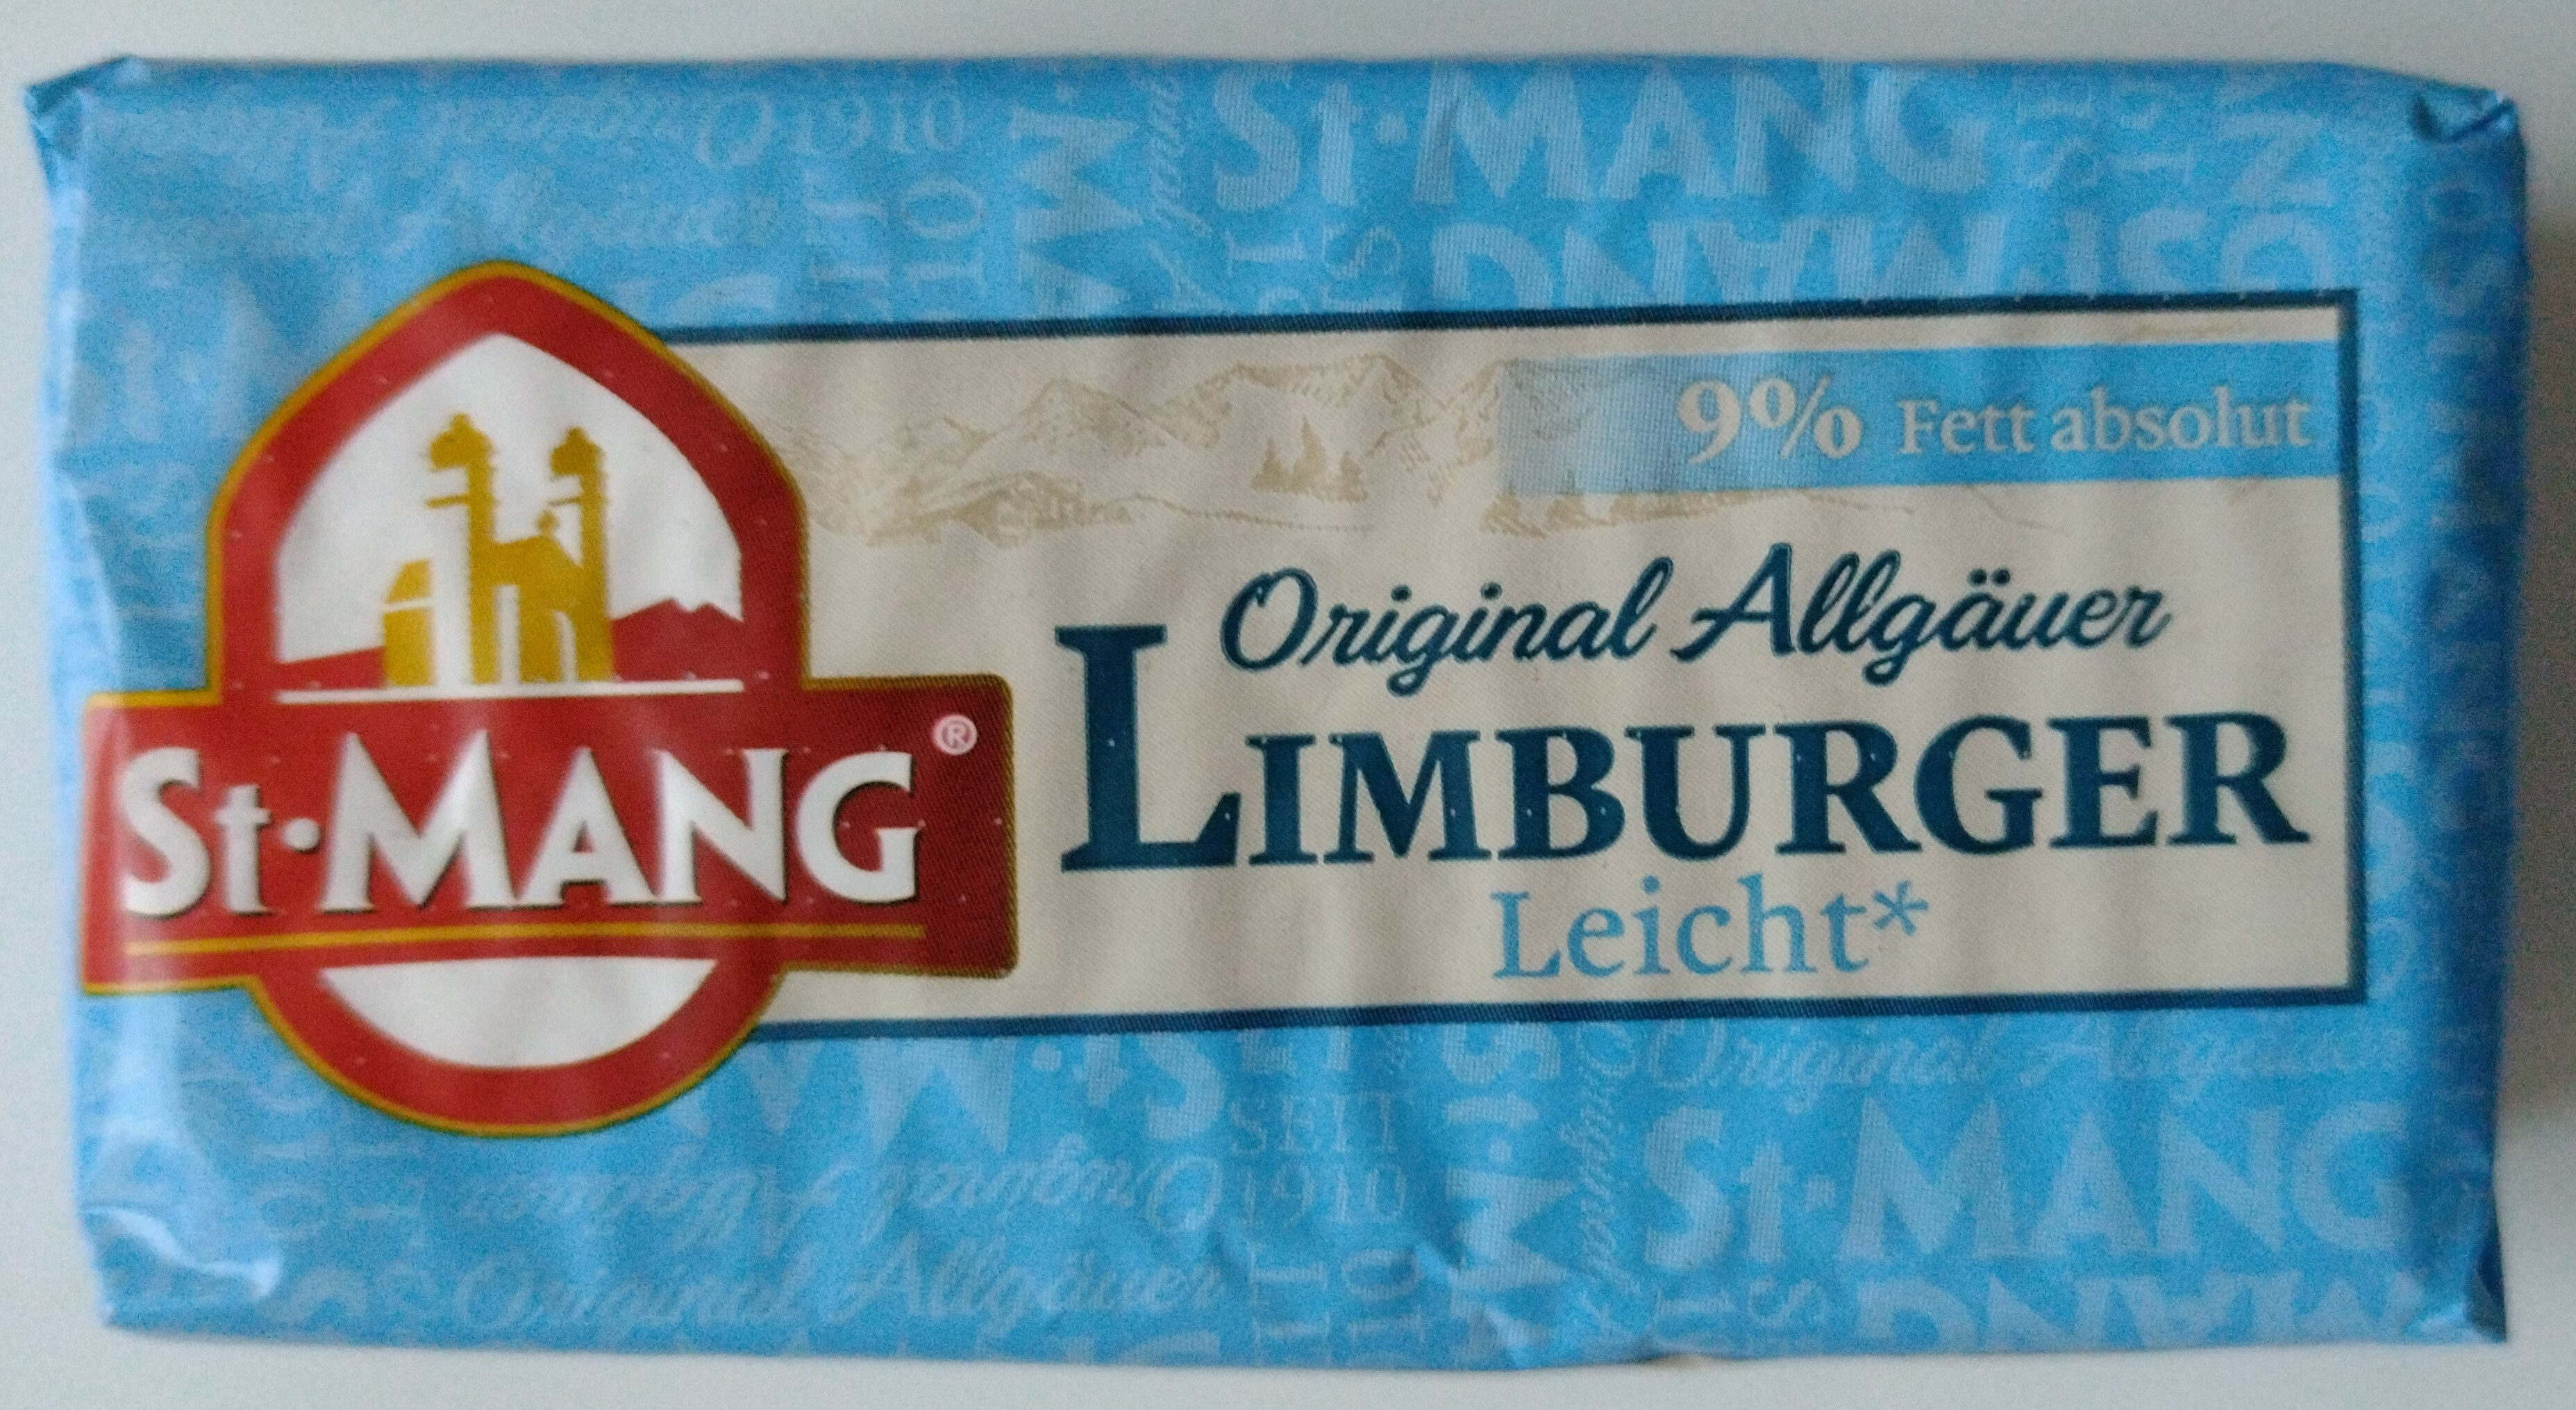 Käse - Limburger Leicht 9% Fett absolut - Product - de